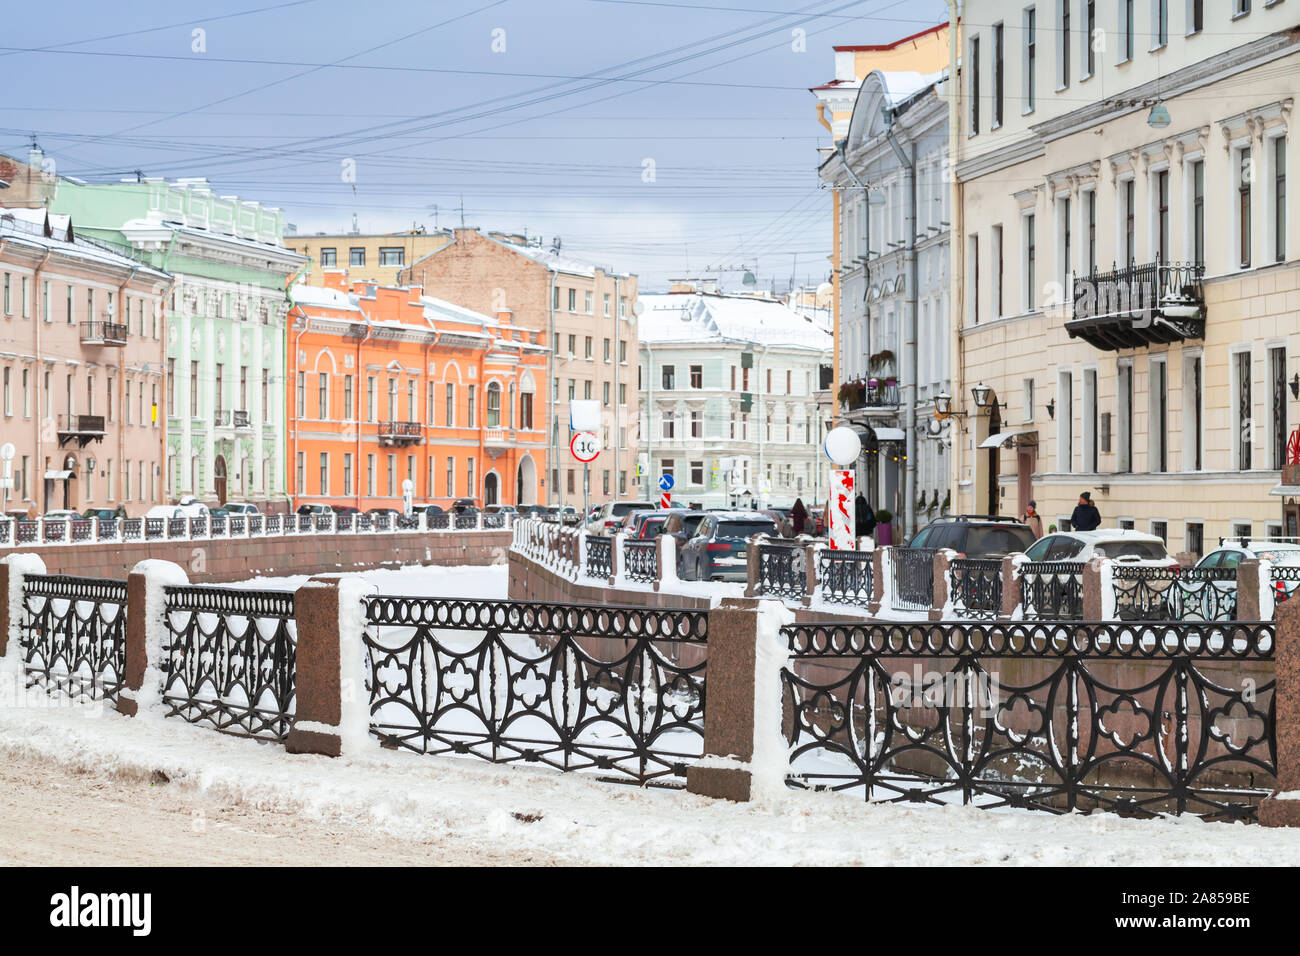 Geschmiedete Geländer von moyka River im Winter. Es ist ein kleiner Fluss in Russland, umgibt den zentralen Teil von St. Petersburg, Russland Stockfoto